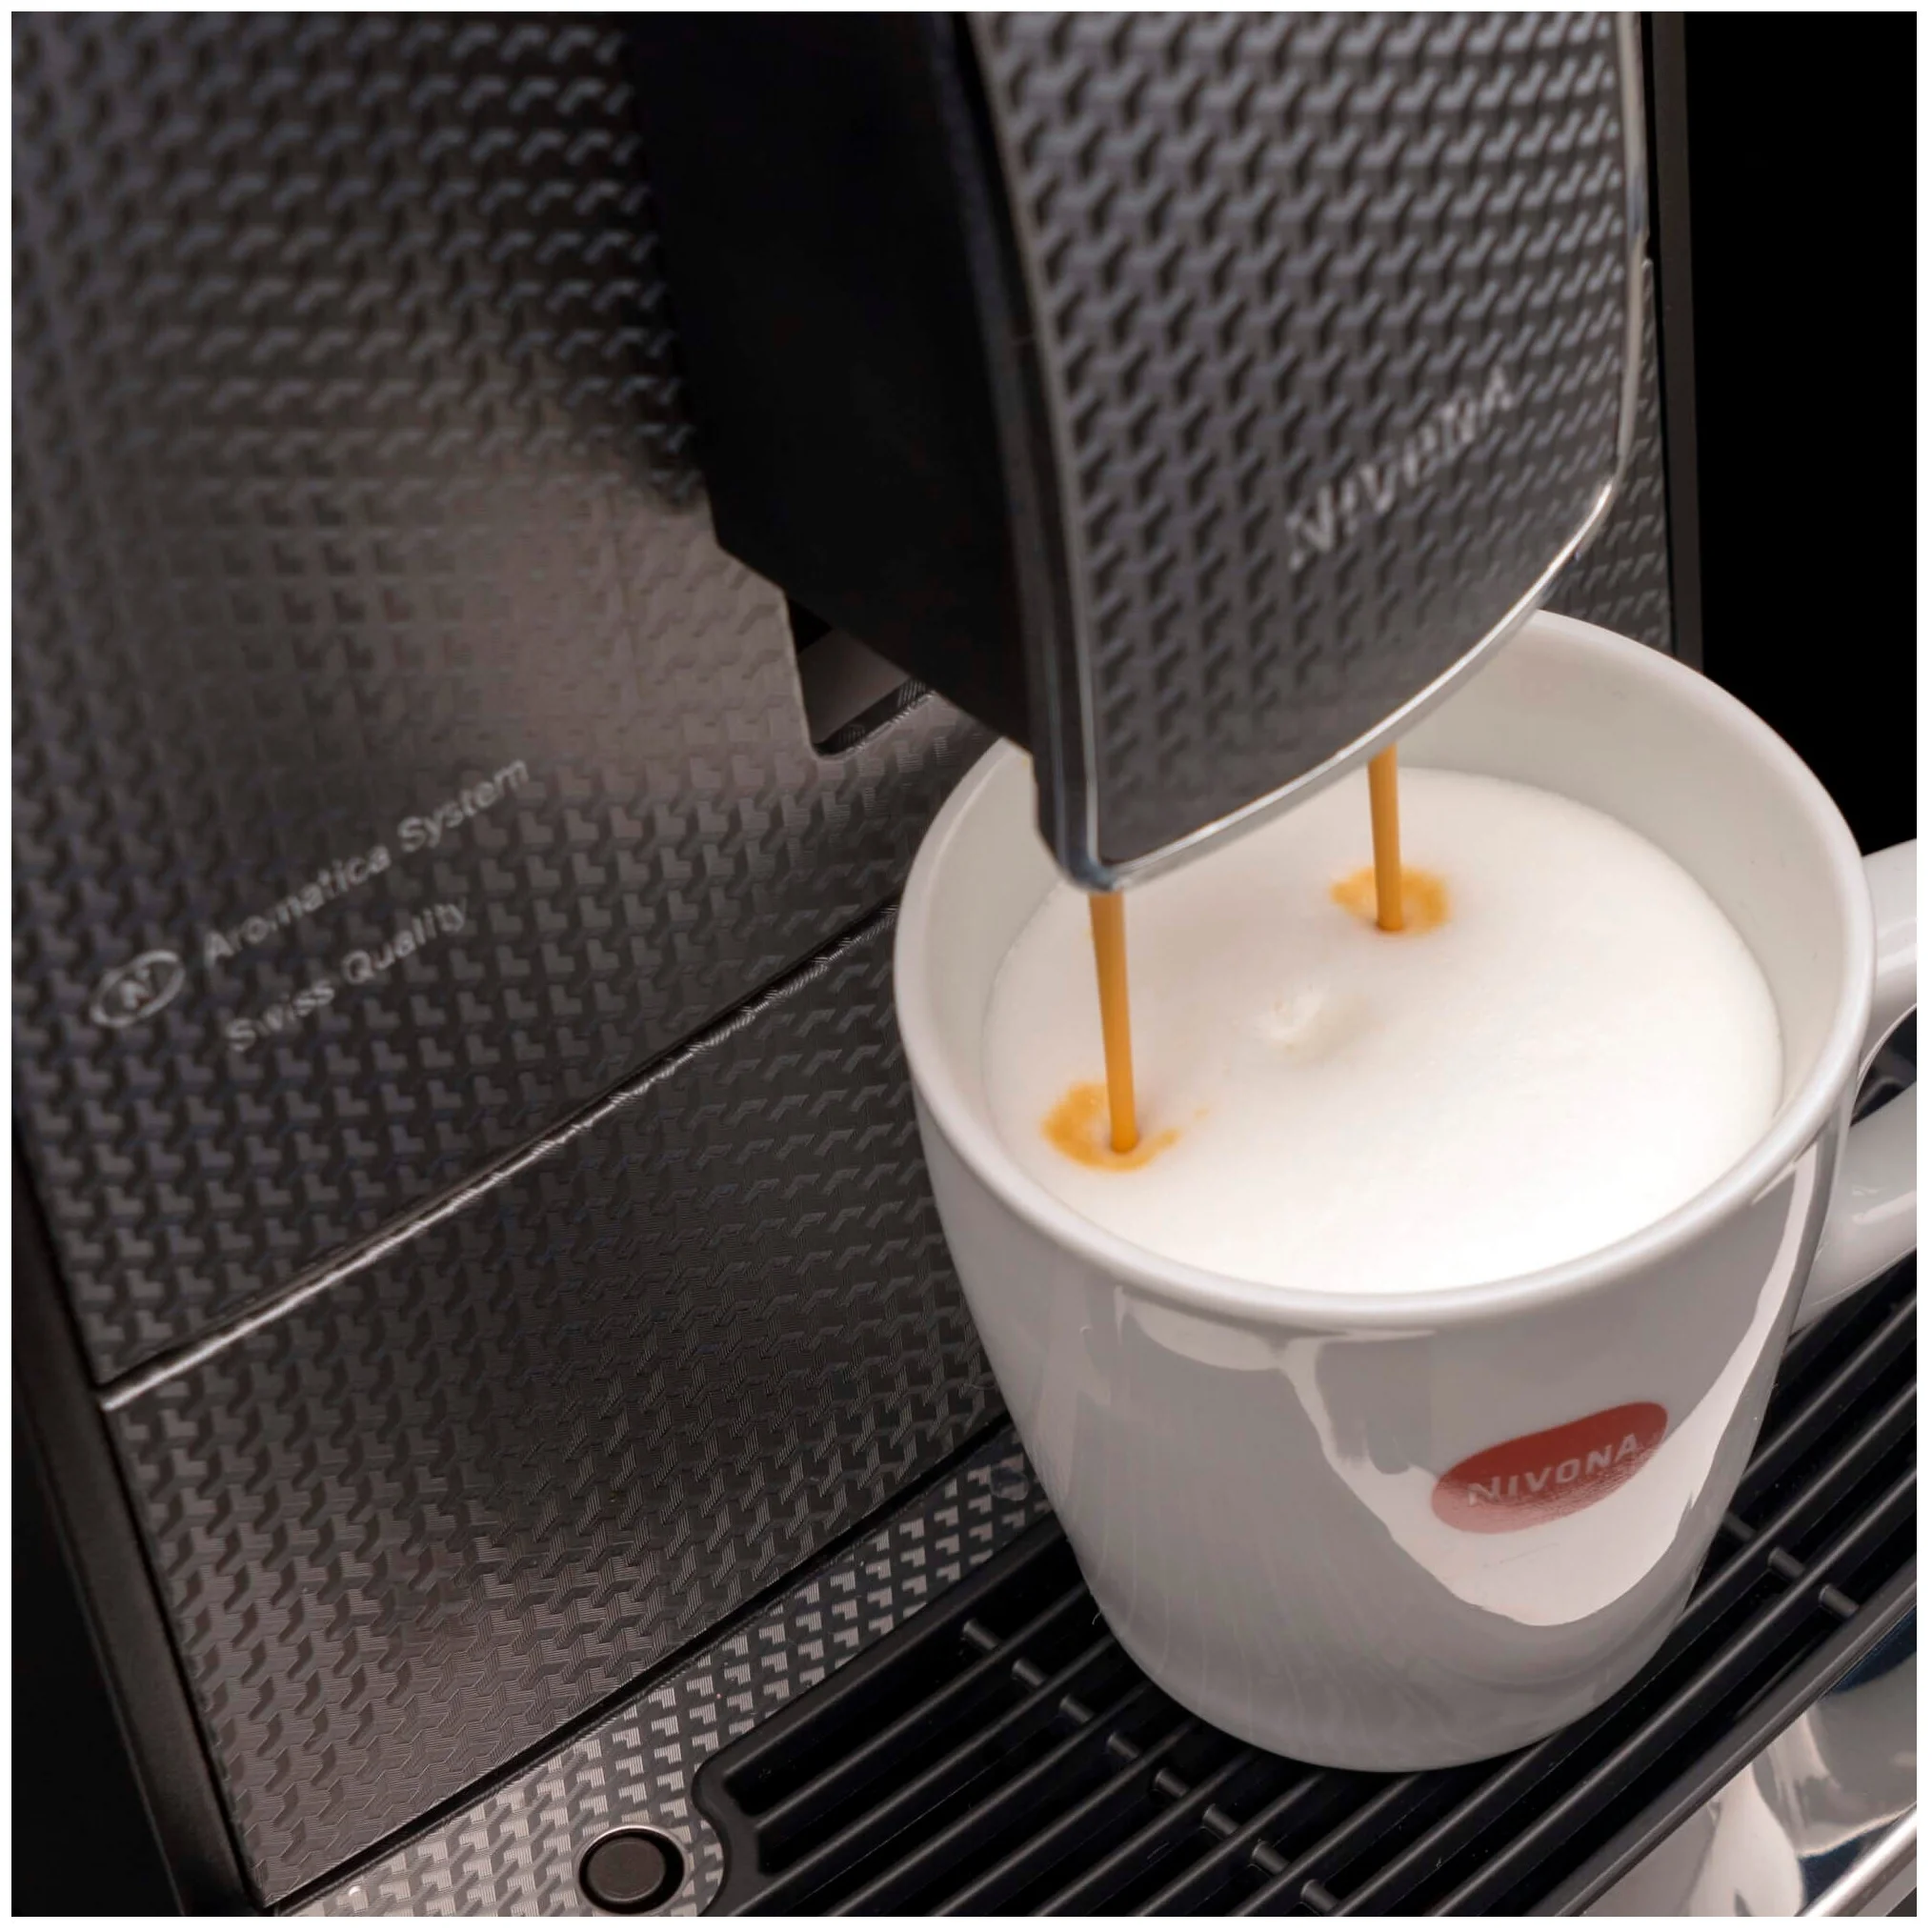 Nivona CafeRomatica 789 - настройки: температура кофе, крепость кофе, объем порции горячей воды, жесткость воды